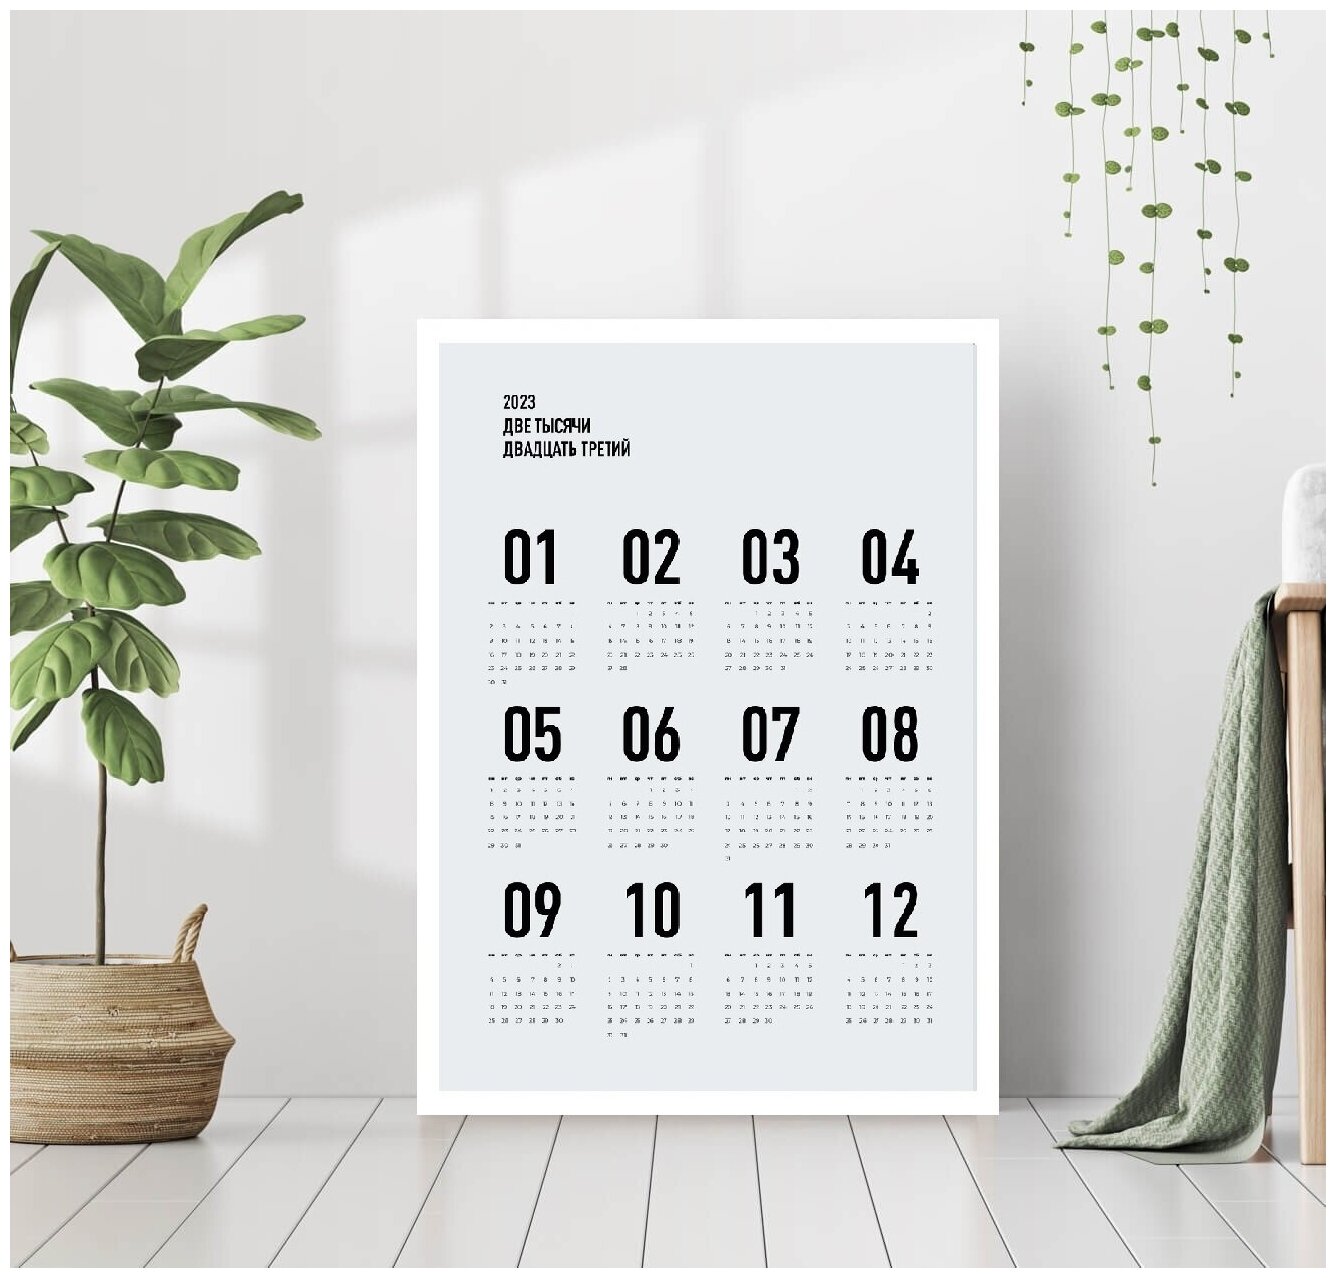 Постер "Календарь 2023 в современном стиле минимализм" 40 * 50 в белой раме / Картина / Постеры для интерьера / Плакаты / Рамка